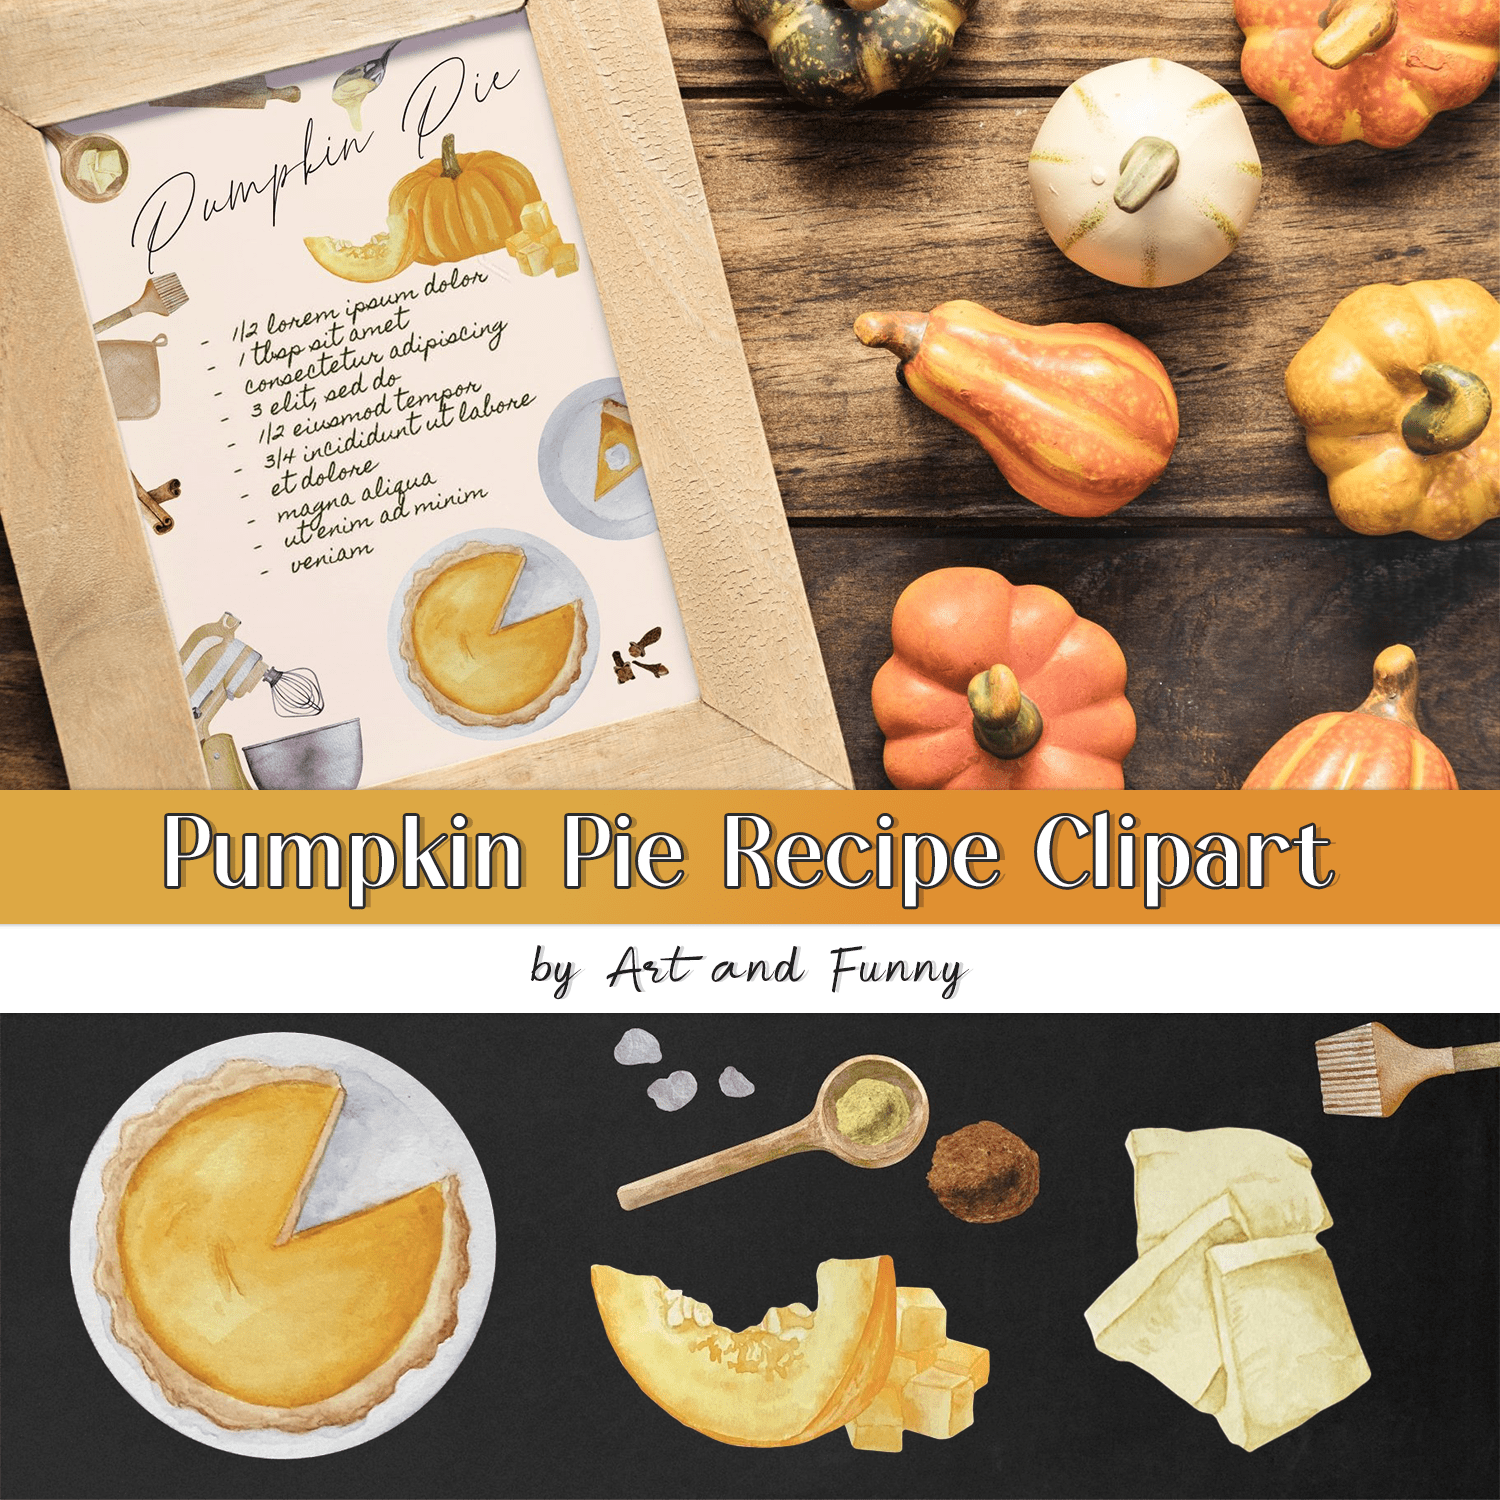 Pumpkin Pie Recipe Clipart.